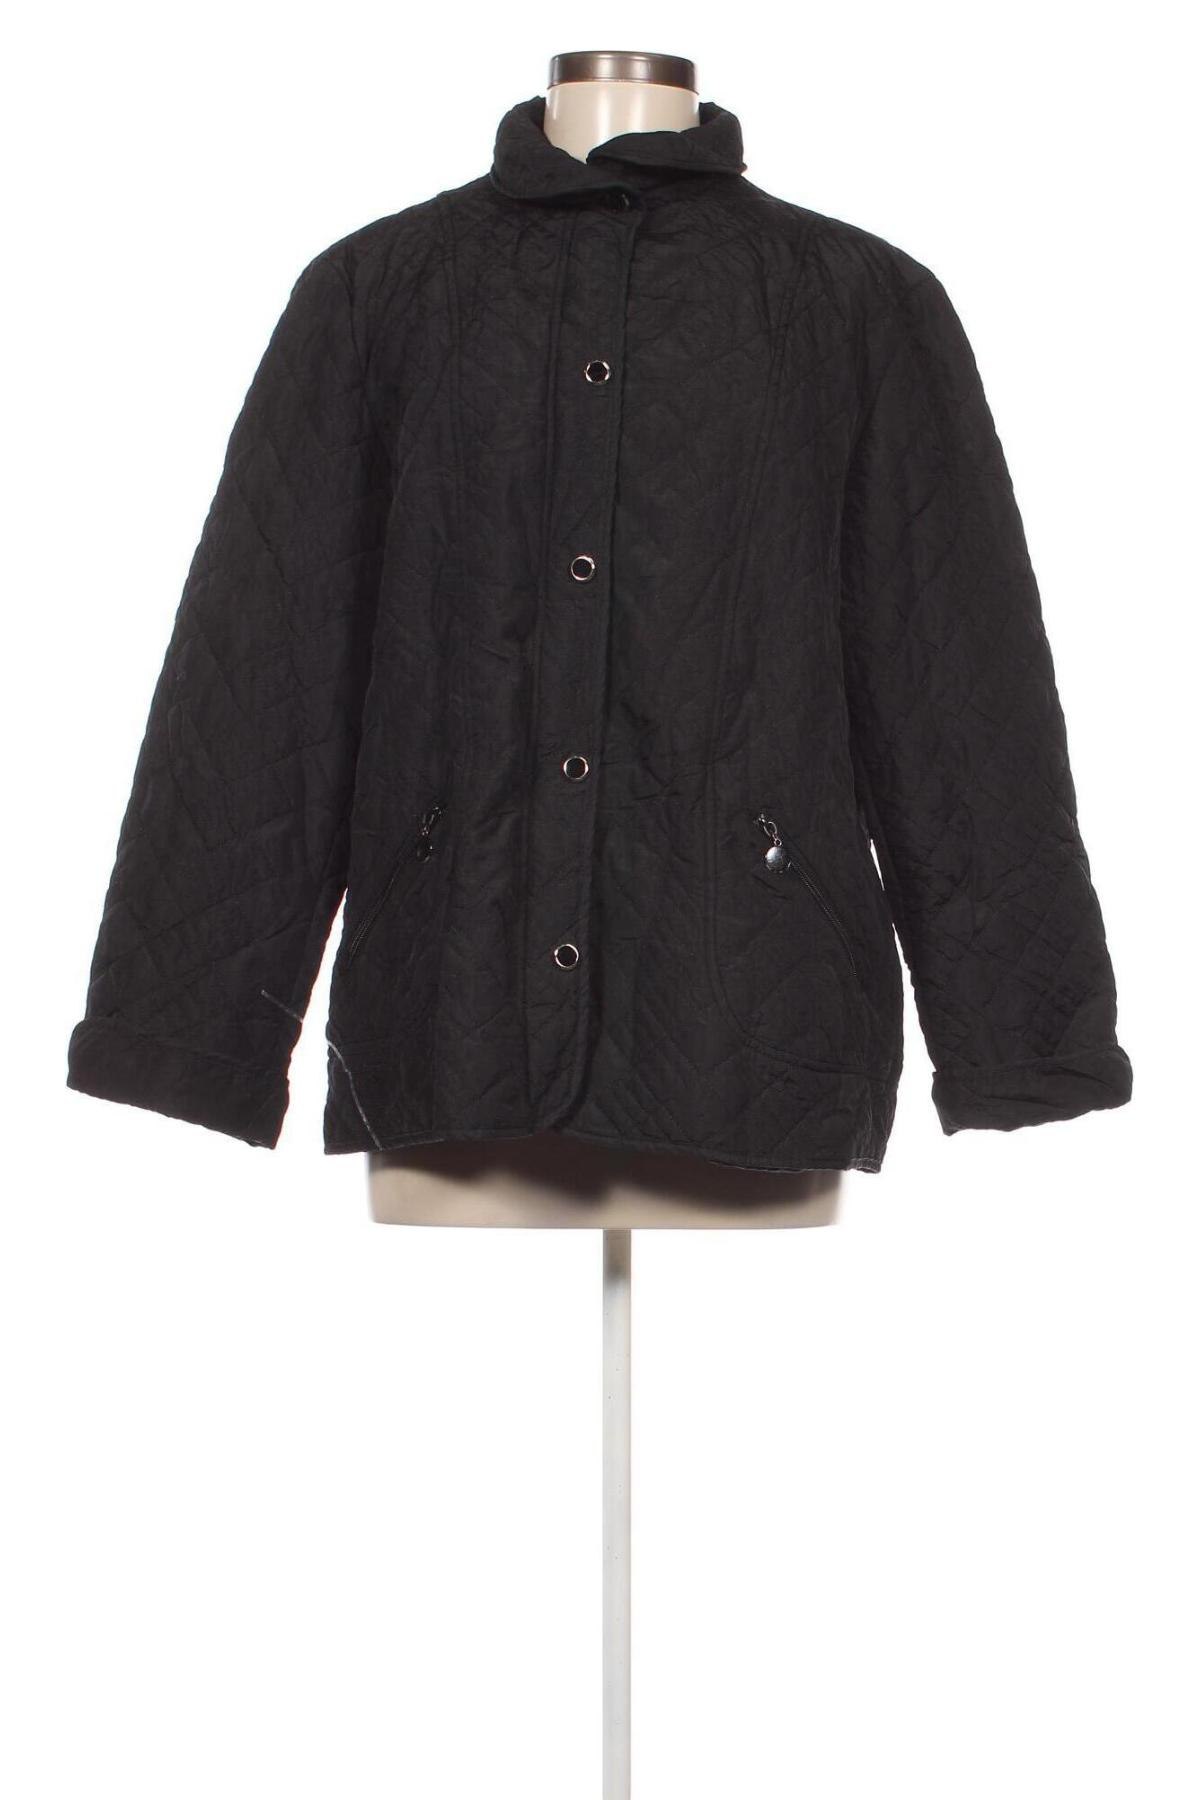 Γυναικείο μπουφάν Mitno, Μέγεθος XL, Χρώμα Μαύρο, Τιμή 4,45 €